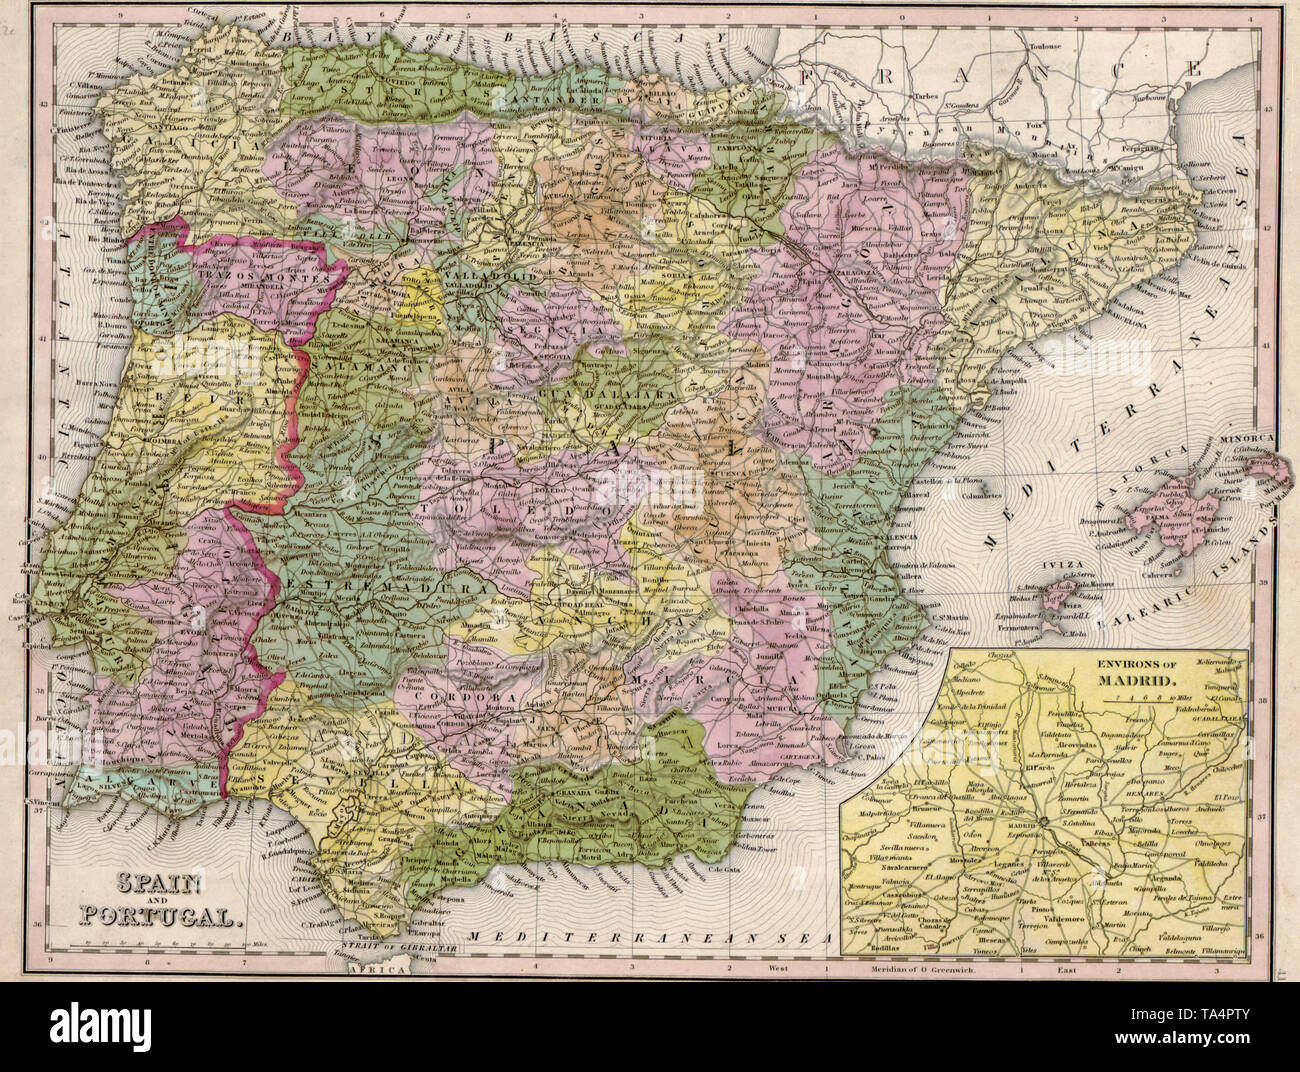 Carte de l'Espagne et Portugal, 1844 Banque D'Images